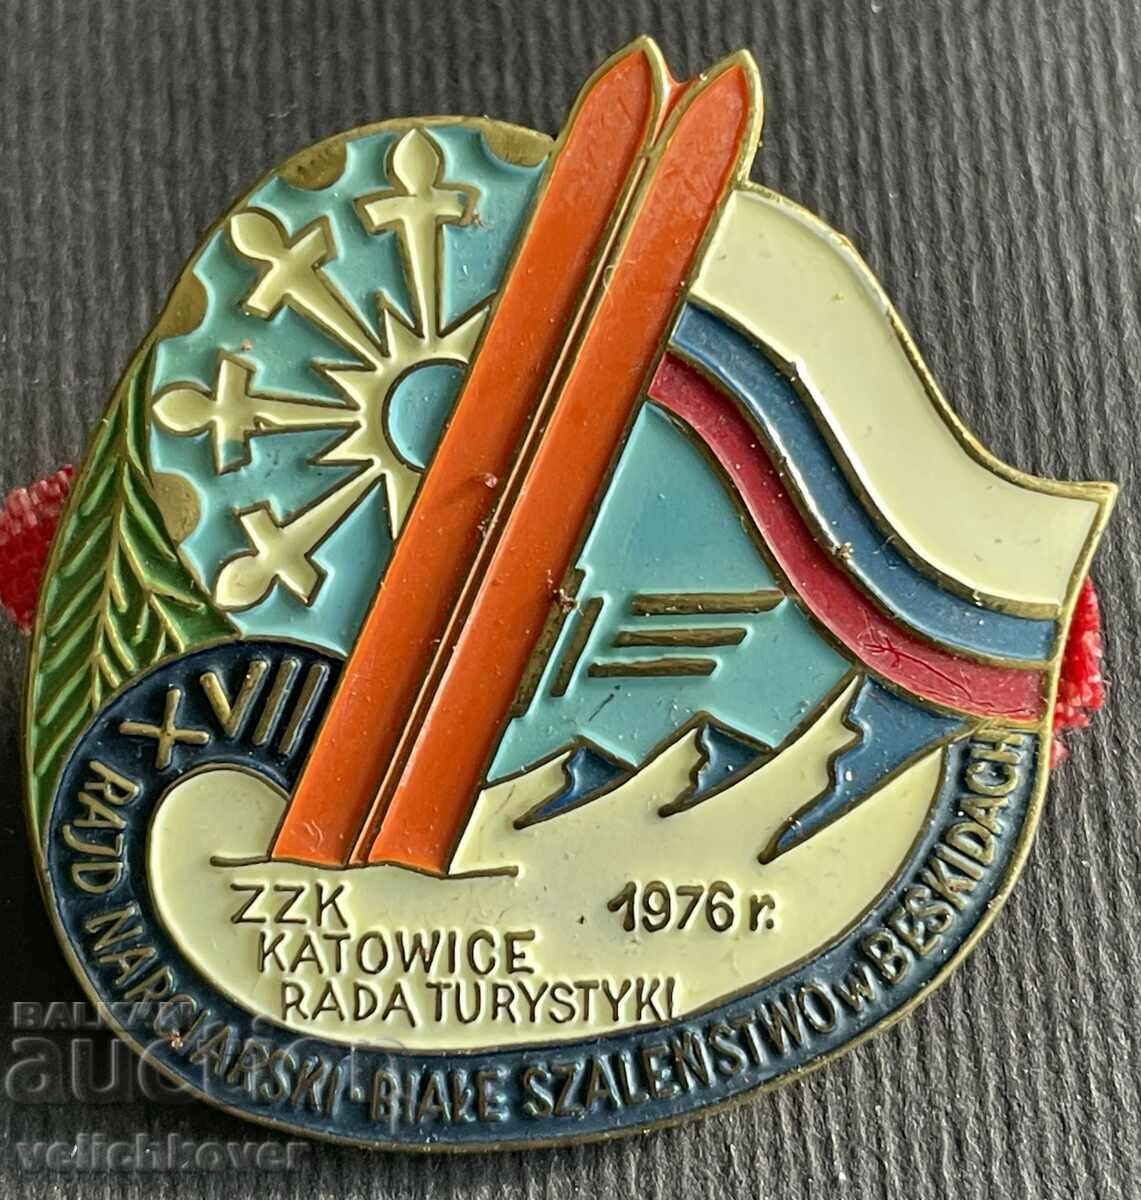 37148 Πολωνία τουριστική πινακίδα αγώνα σκι 1976 Σε μια βίδα